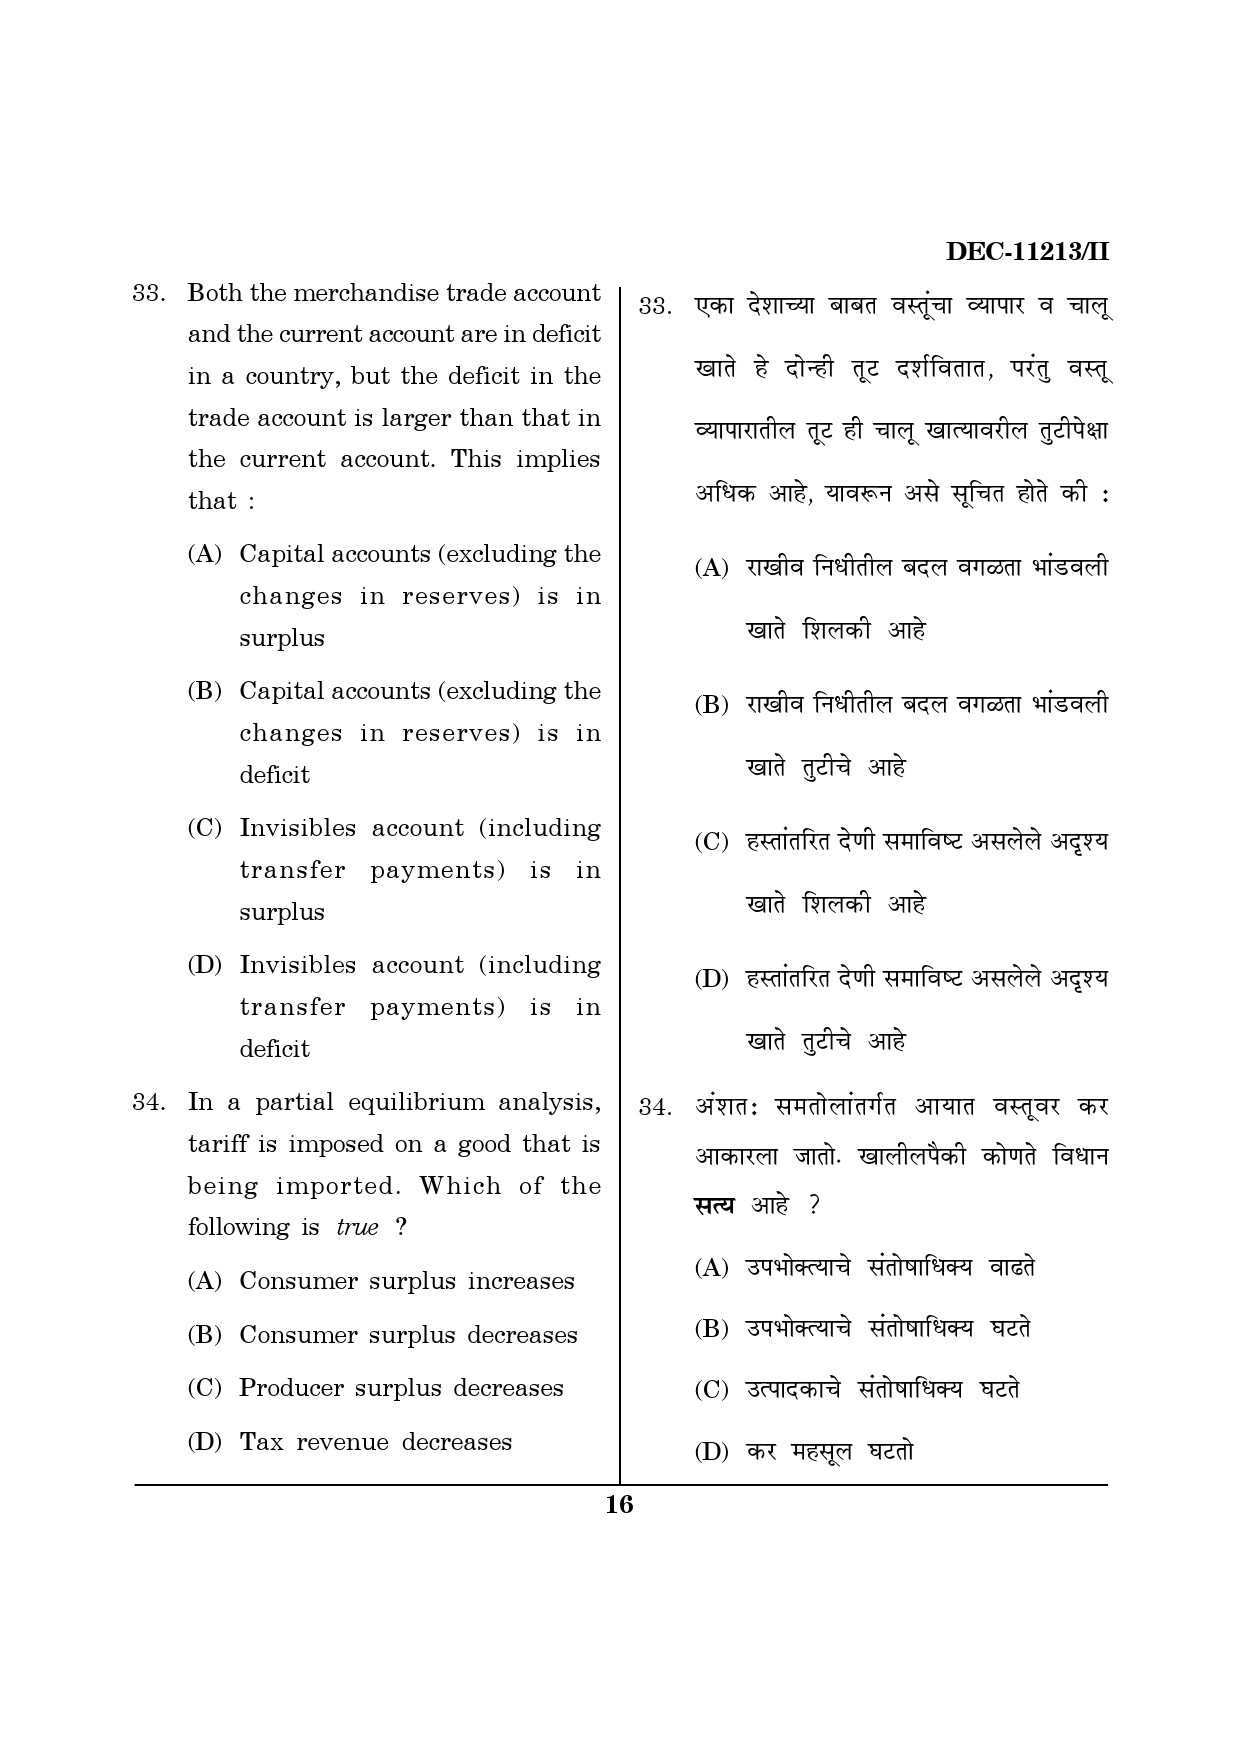 Maharashtra SET Economics Question Paper II December 2013 15